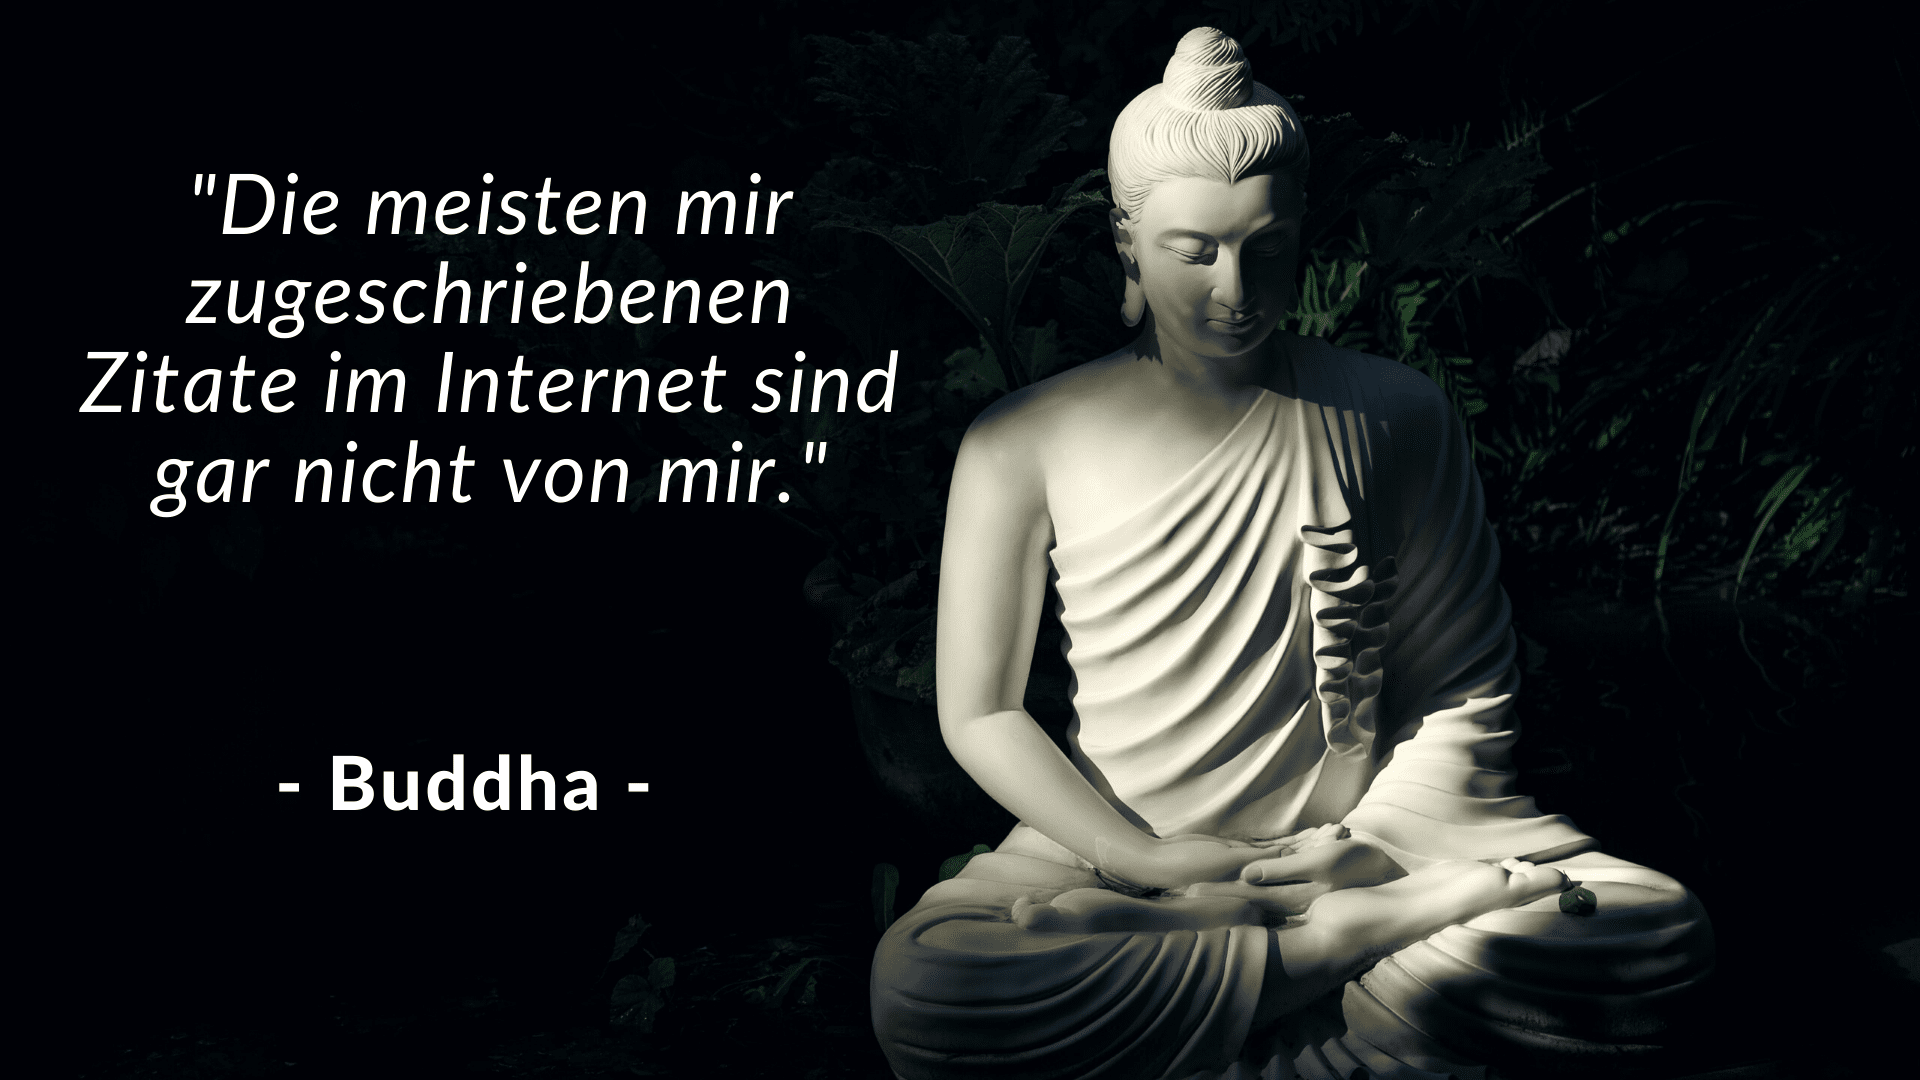 Buddha Zitate im Internet - buddhistische weisheiten